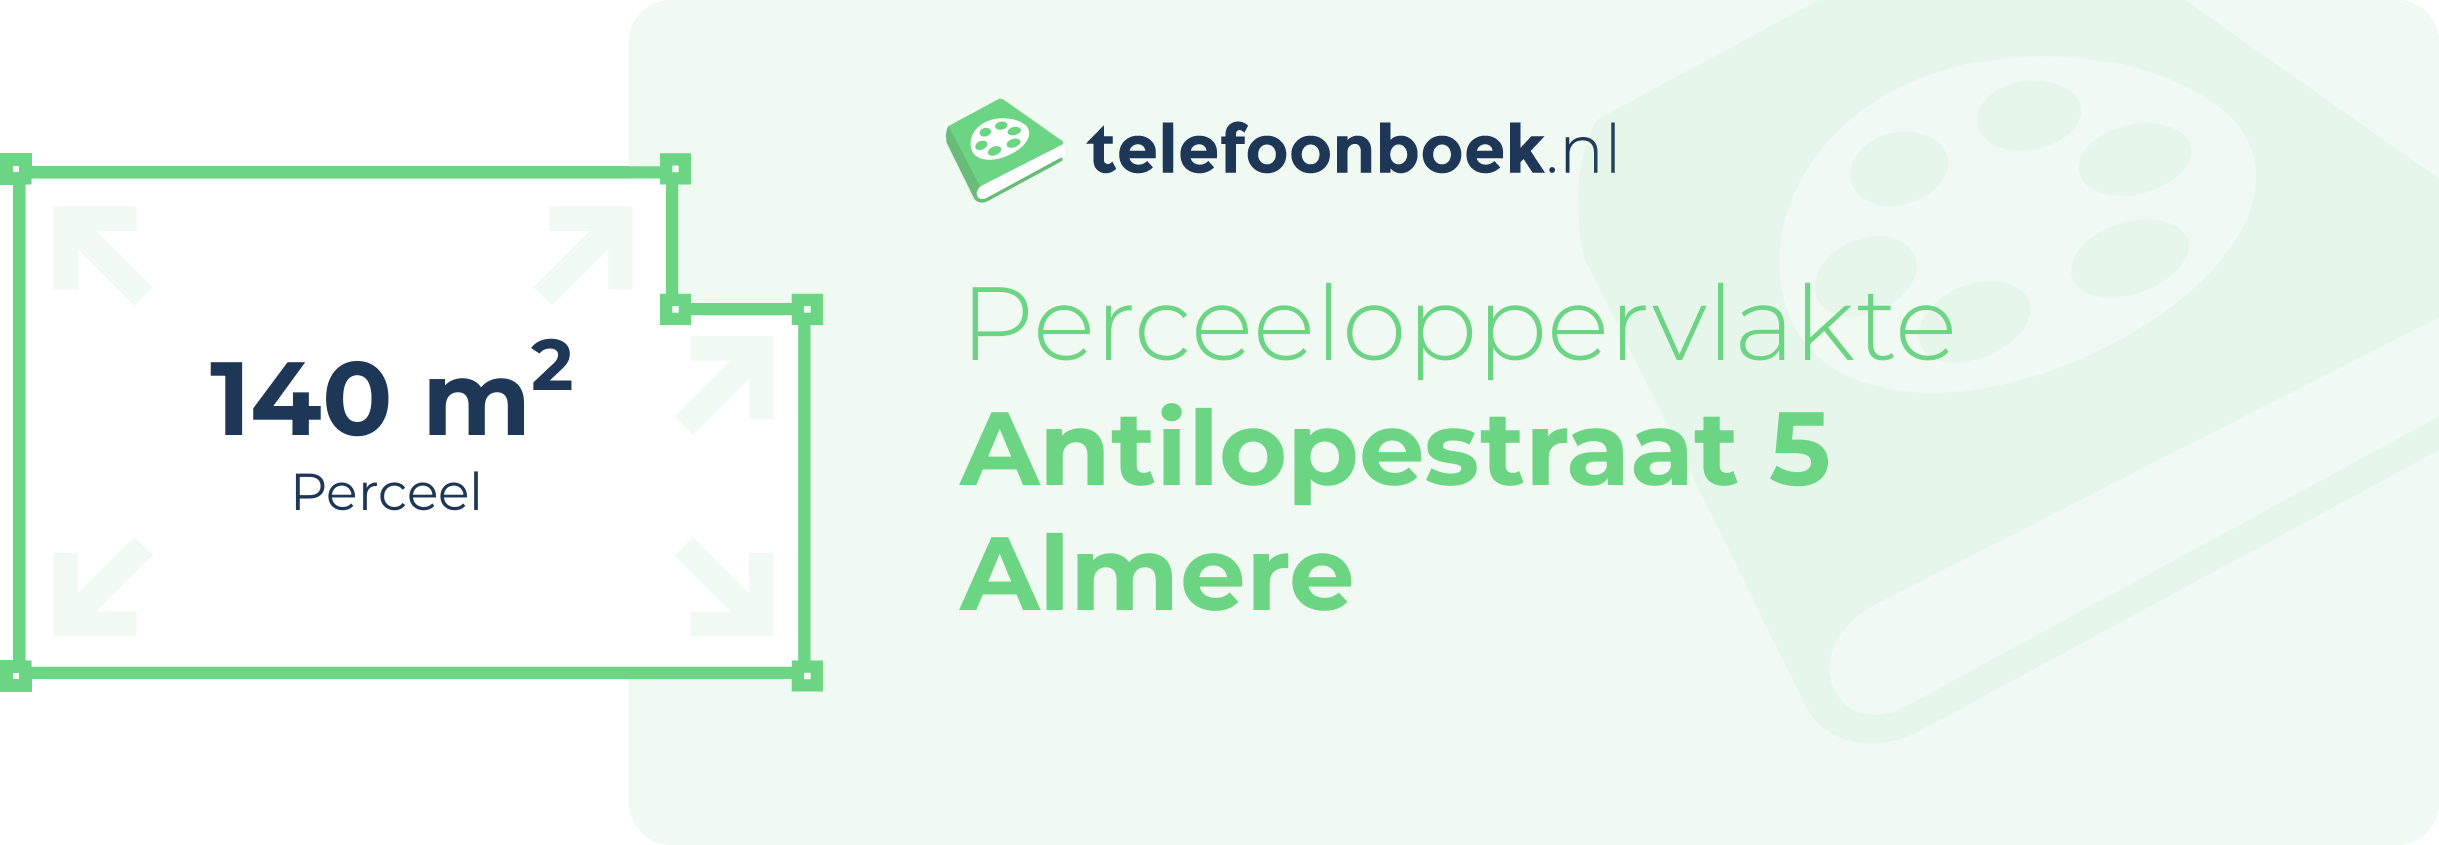 Perceeloppervlakte Antilopestraat 5 Almere